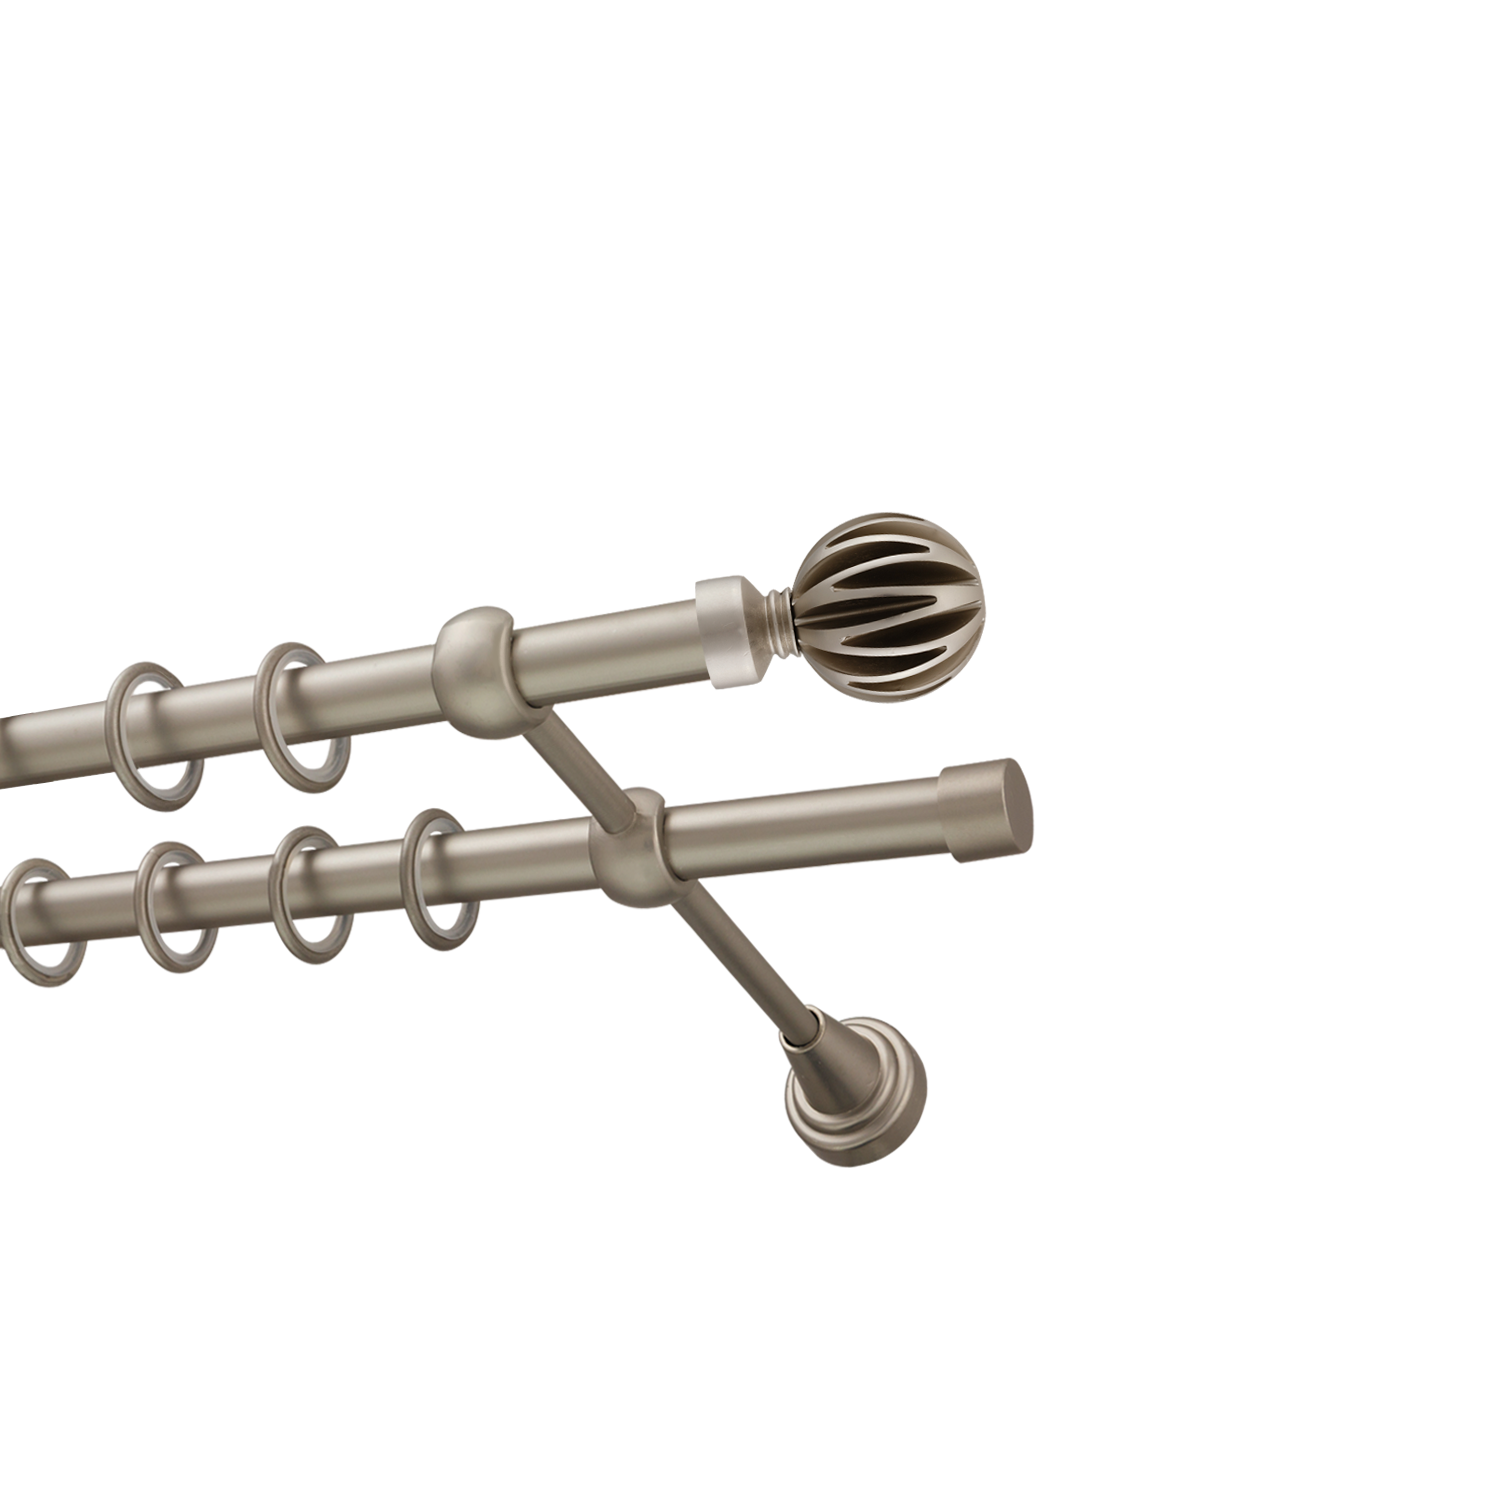 Металлический карниз для штор Шафран, двухрядный 16/16 мм, сталь, гладкая штанга, длина 240 см